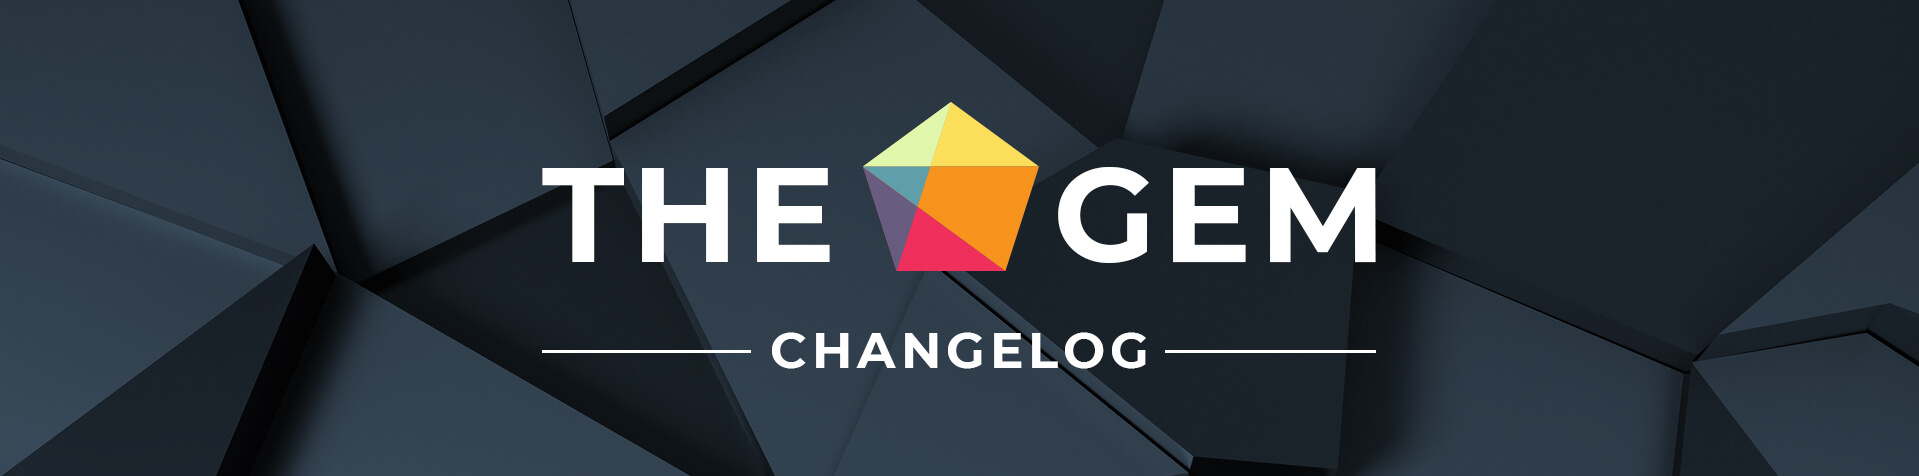 TheGem Theme Changelog